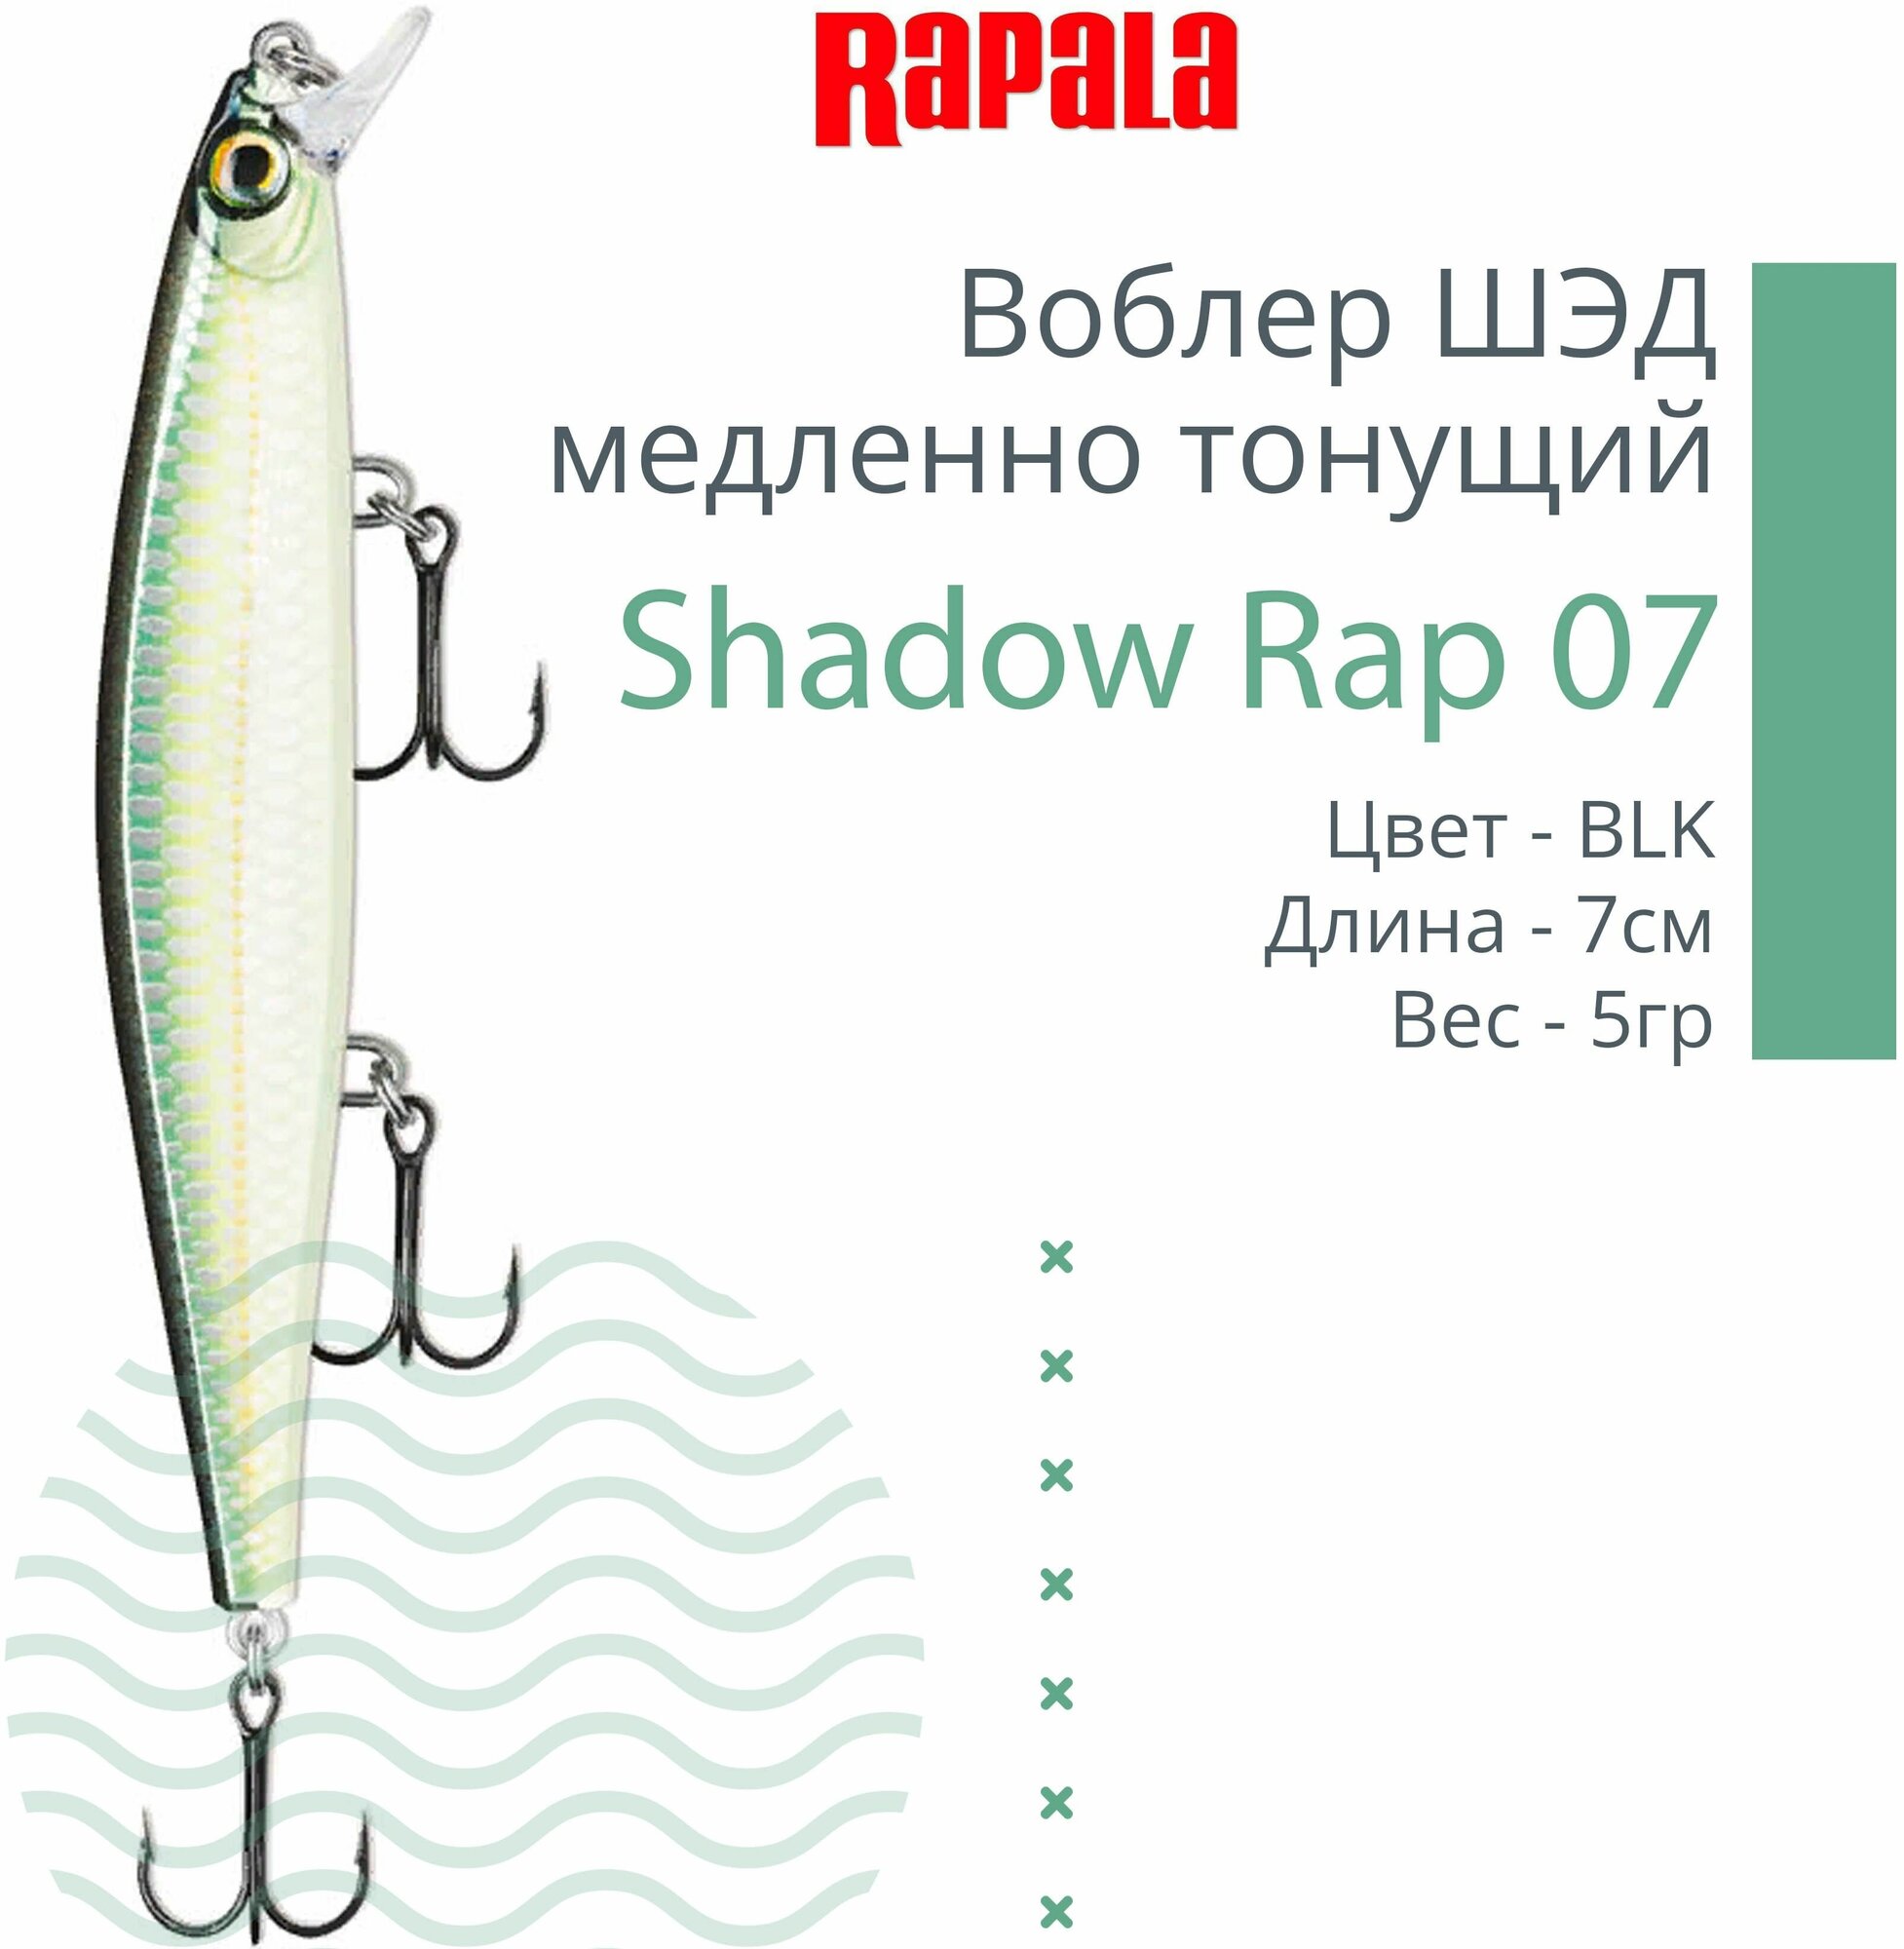 Воблер для рыбалки RAPALA Shadow Rap 07, 7см, 5гр, цвет BLK, медленно тонущий